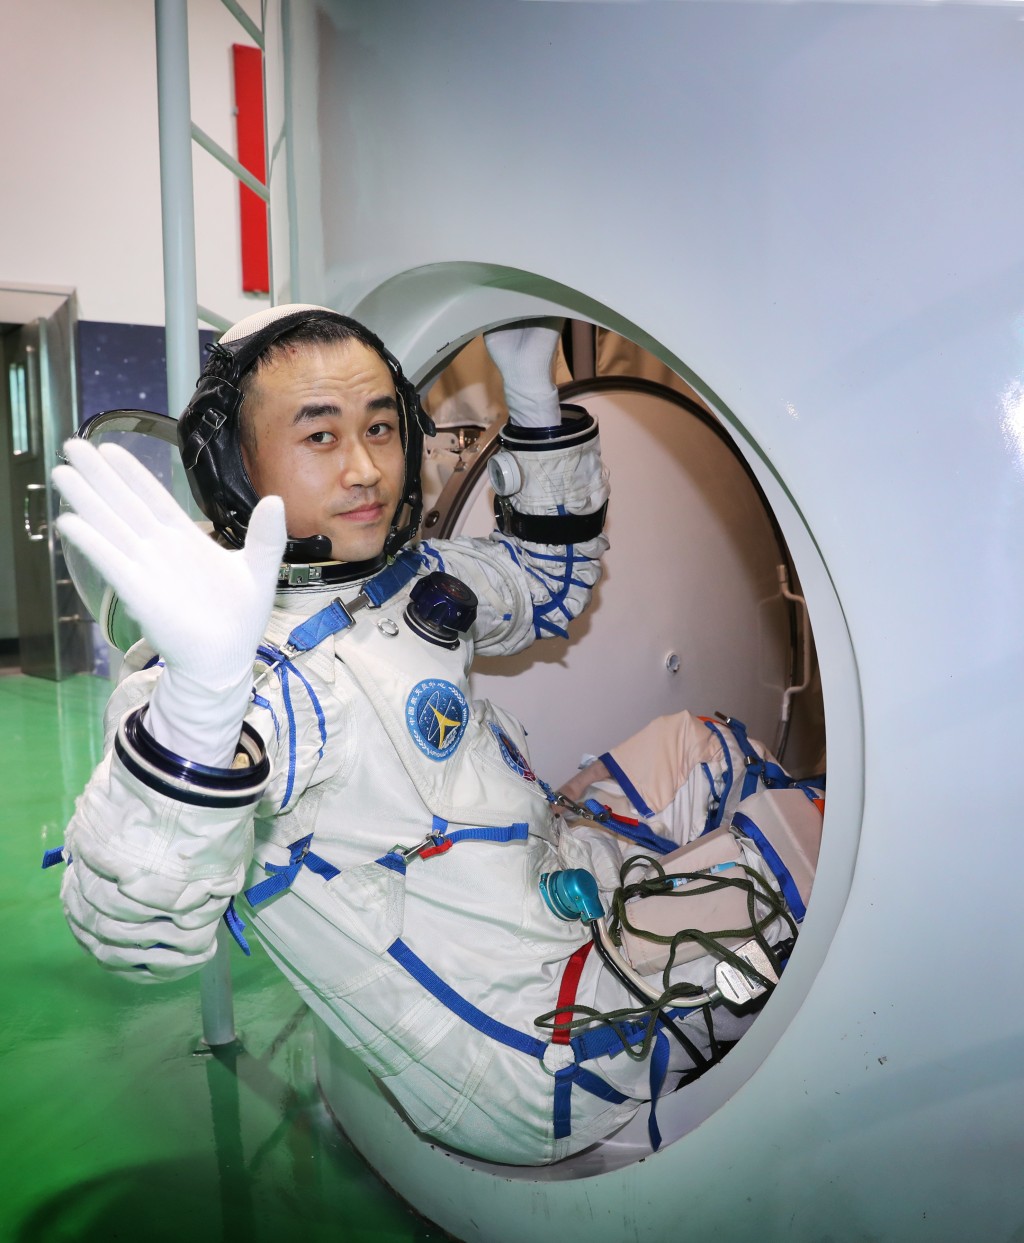 太空人唐勝傑是執行神舟十七號任務最年輕的太空人。(新華社)